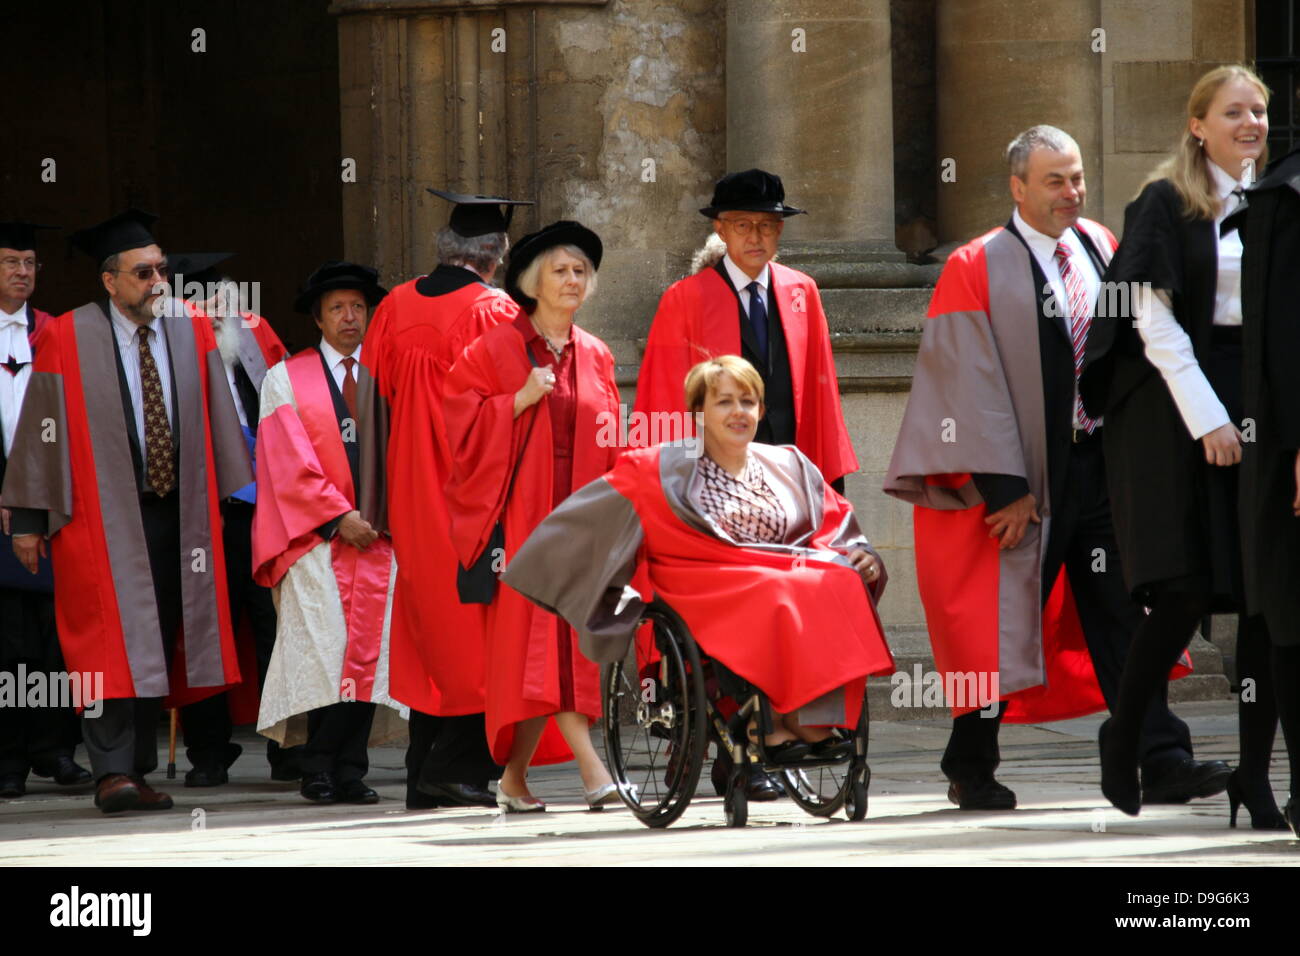 Oxford, UK. 19. Juni 2013. tanni Grau - Thompson in einer Prozession mit anderen honorands Ehrendoktorwürde heute an der Oxford University zu erhalten. Quelle: petericardo lusabia/alamy leben Nachrichten Stockfoto